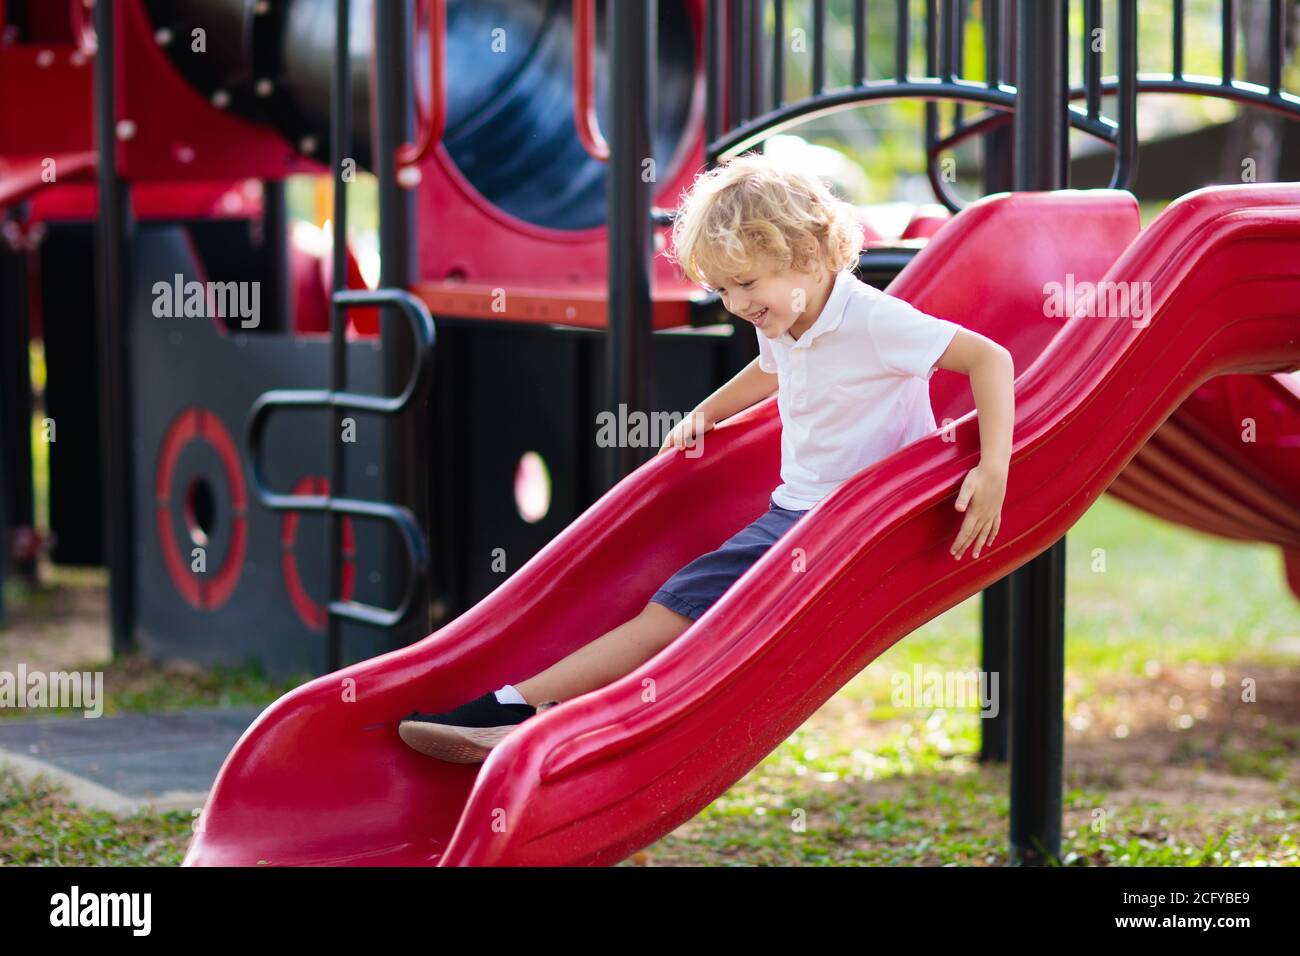 Enfant jouant sur l'aire de jeux extérieure. Les enfants jouent sur l'école ou l'école maternelle cour. Kid active sur diapositive colorées et swing. Activité d'été sain pour chi Banque D'Images